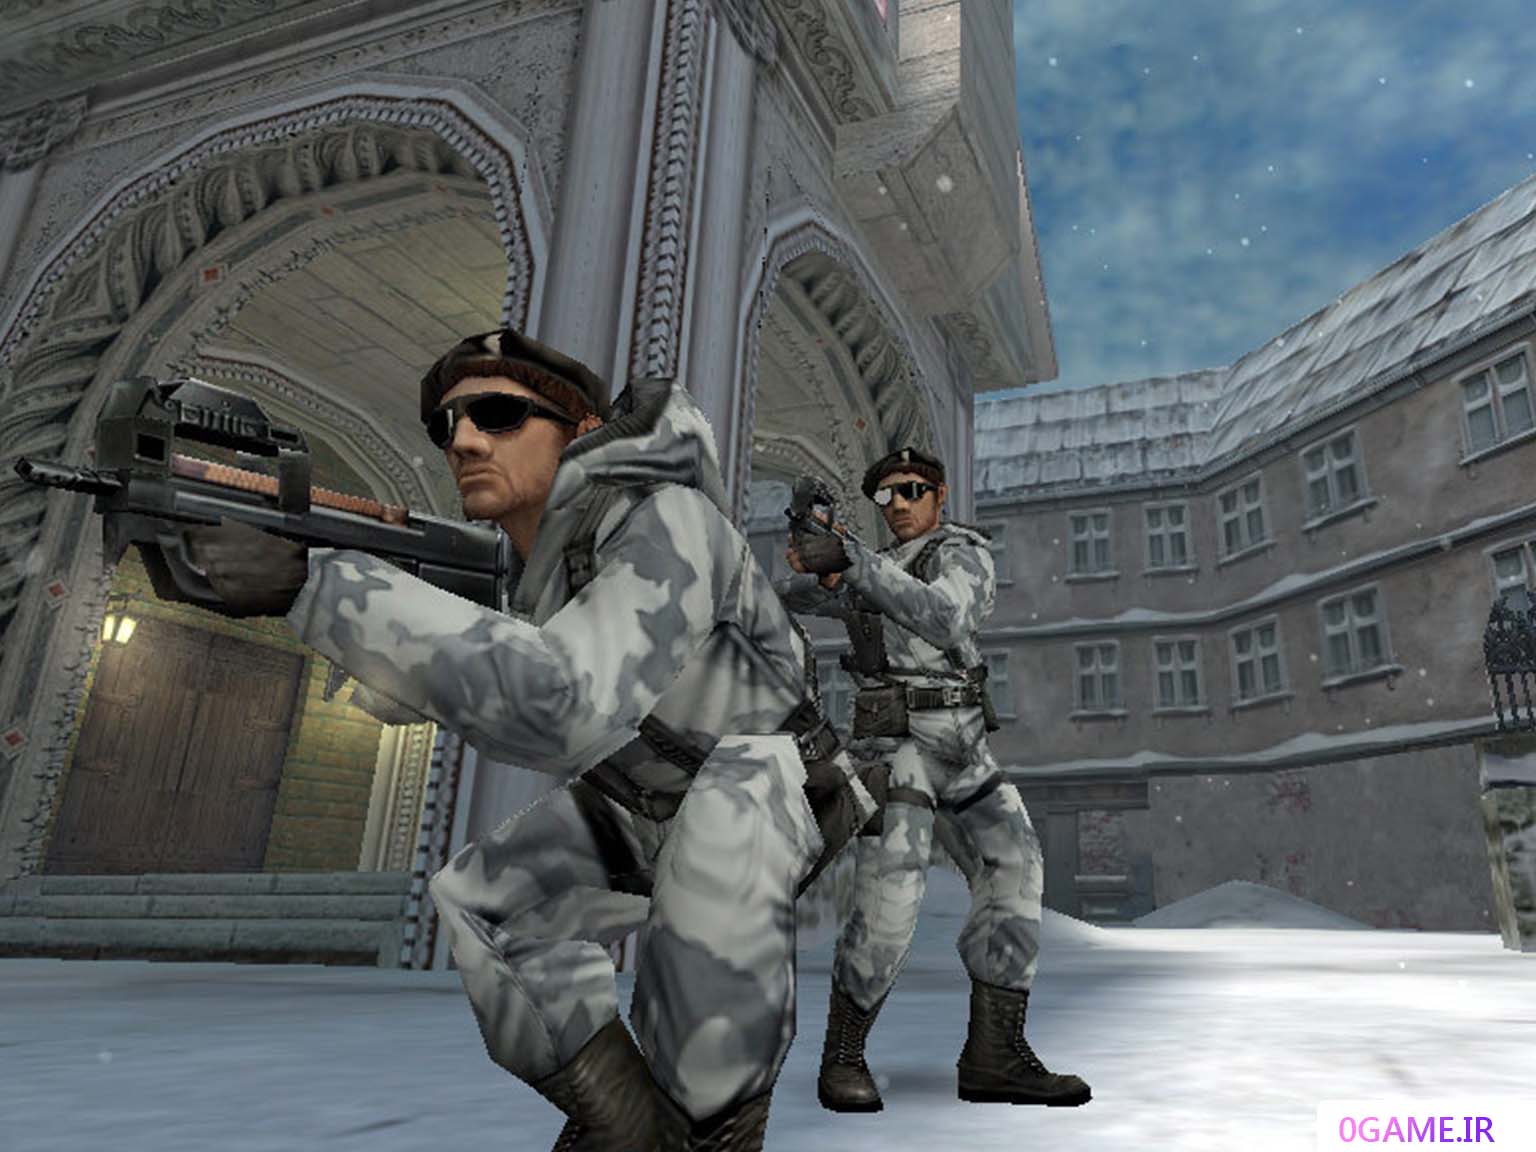 دانلود بازی کانتر استرایک کاندیشن زیرو (Counter-Strike Condition Zero) نسخه کامل برای کامپیوتر